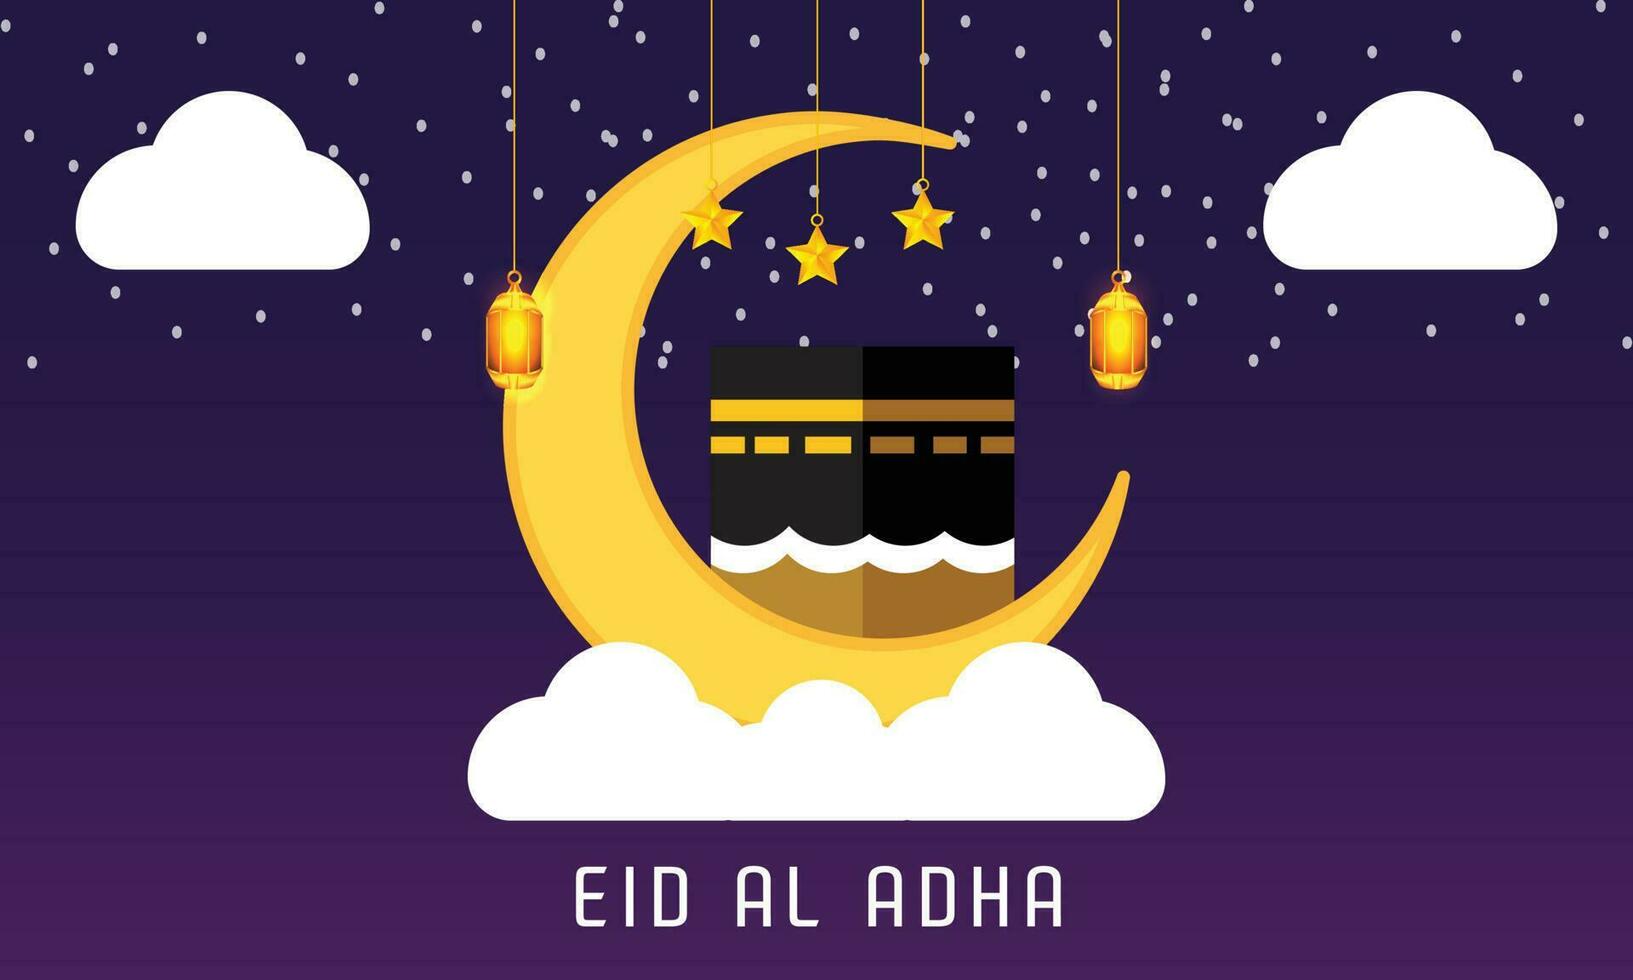 eid al adha Schöne Grüße Hintergrund mit Qaba, Halbmond Mond, Laternen, Sterne, Wolken Design Vorlage vektor